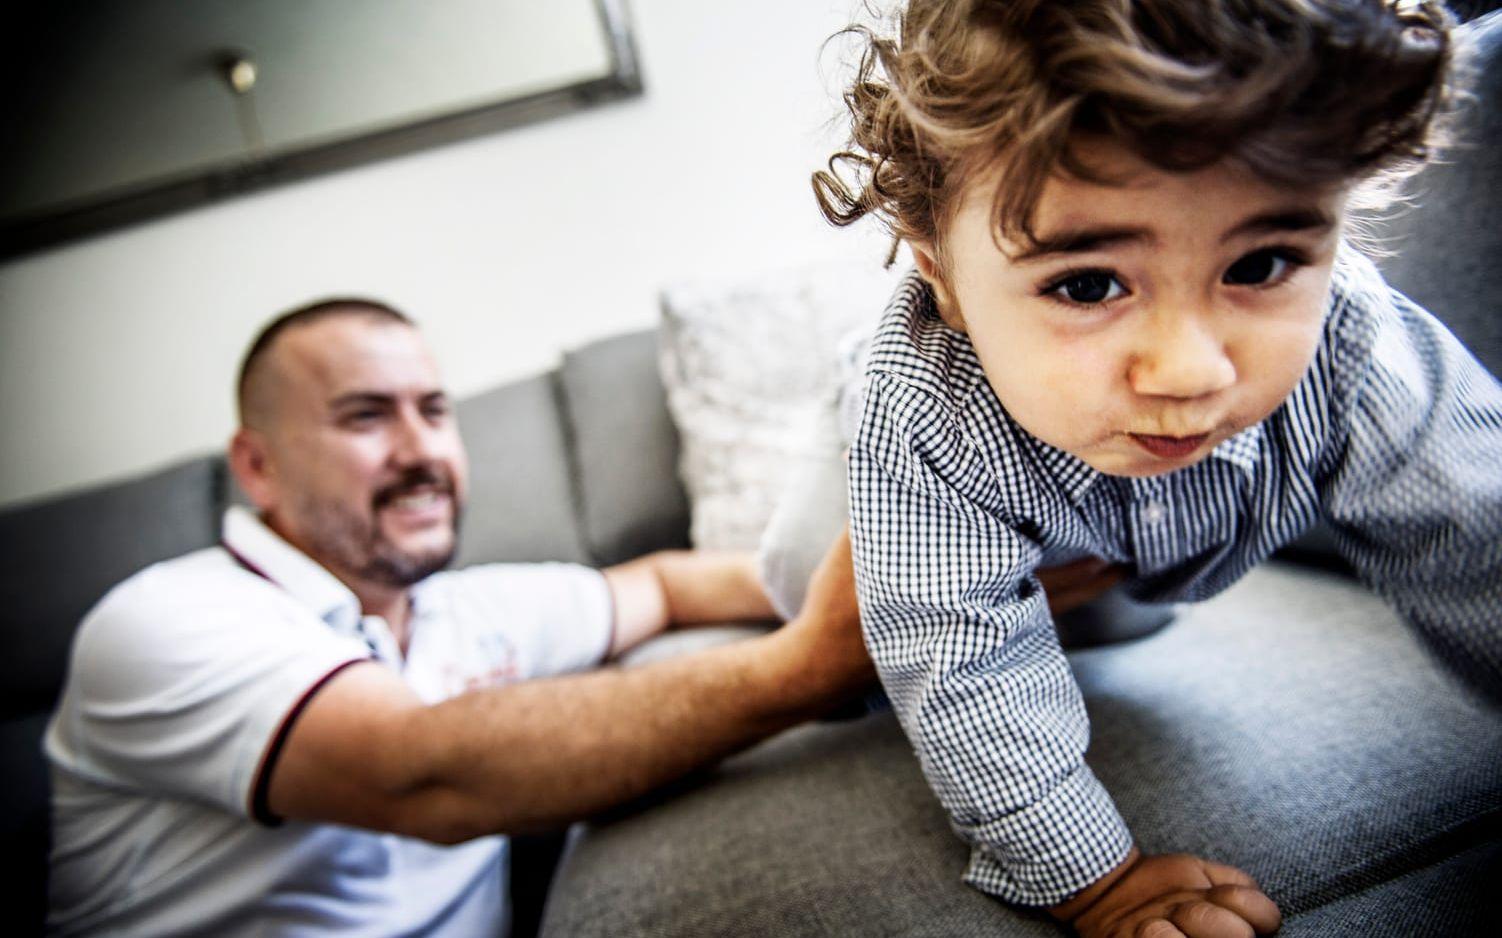 FRAMÅT MED STORMSTEG. Pappa Yusuf håller koll på sonen Eser som klättar på soffan. 16 månader har gått sedan den svåra förlossningen, när Eser fick en nervskada i armen. Bild: Jenny Ingemarsson